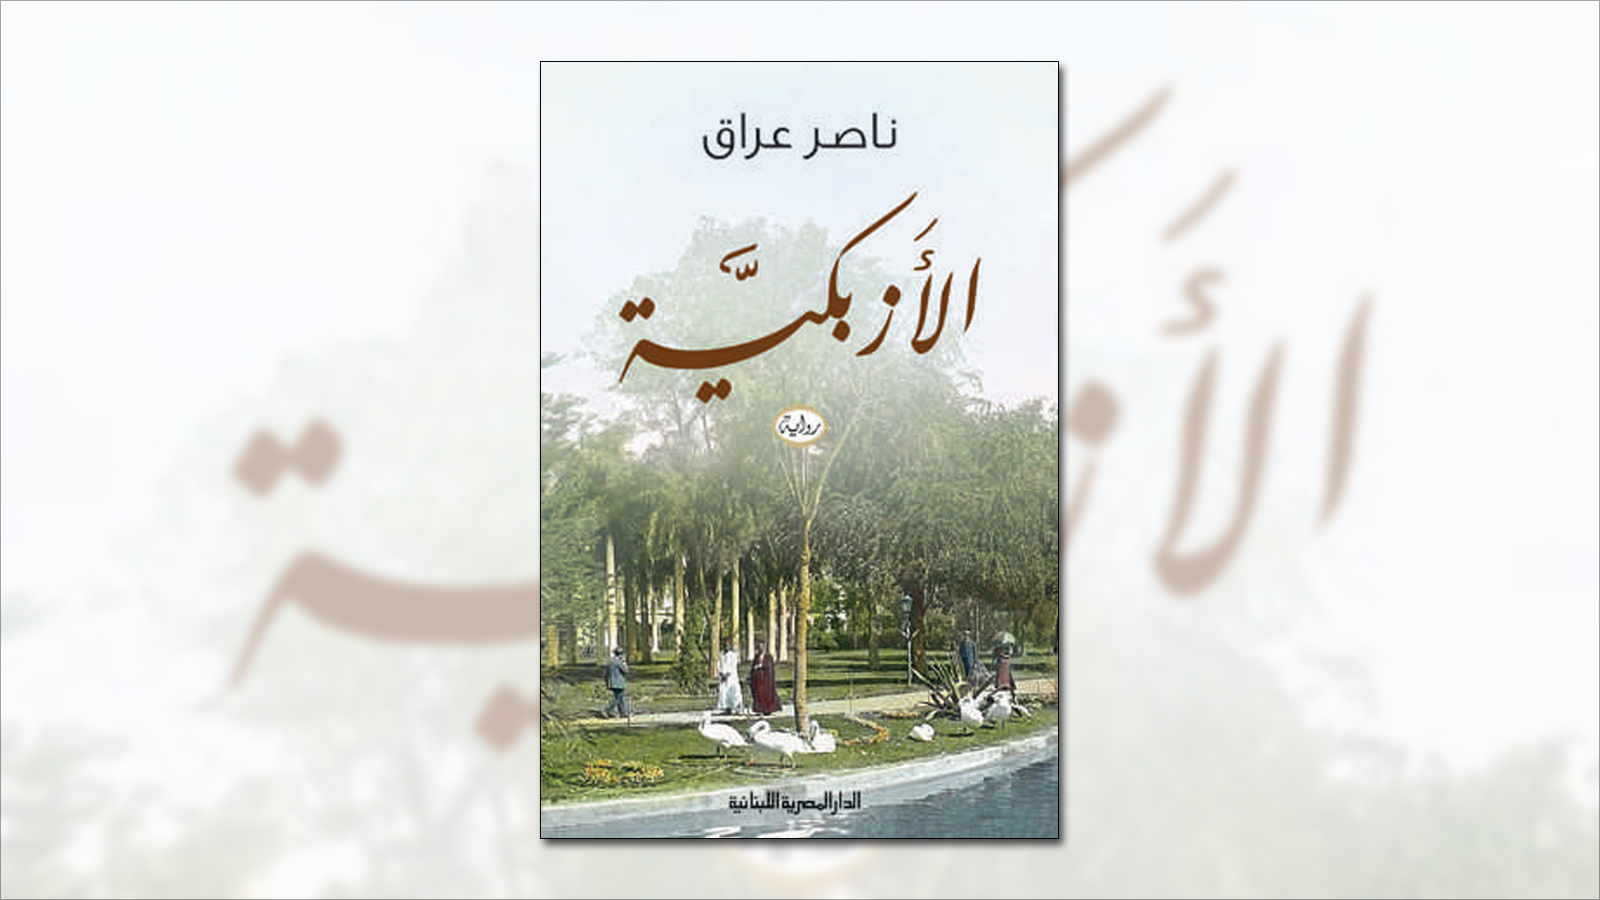 رواية الأزبكية لناصر عراق توجت العام الماضي بجائزة كتارا للرواية العربية(الجزيرة)